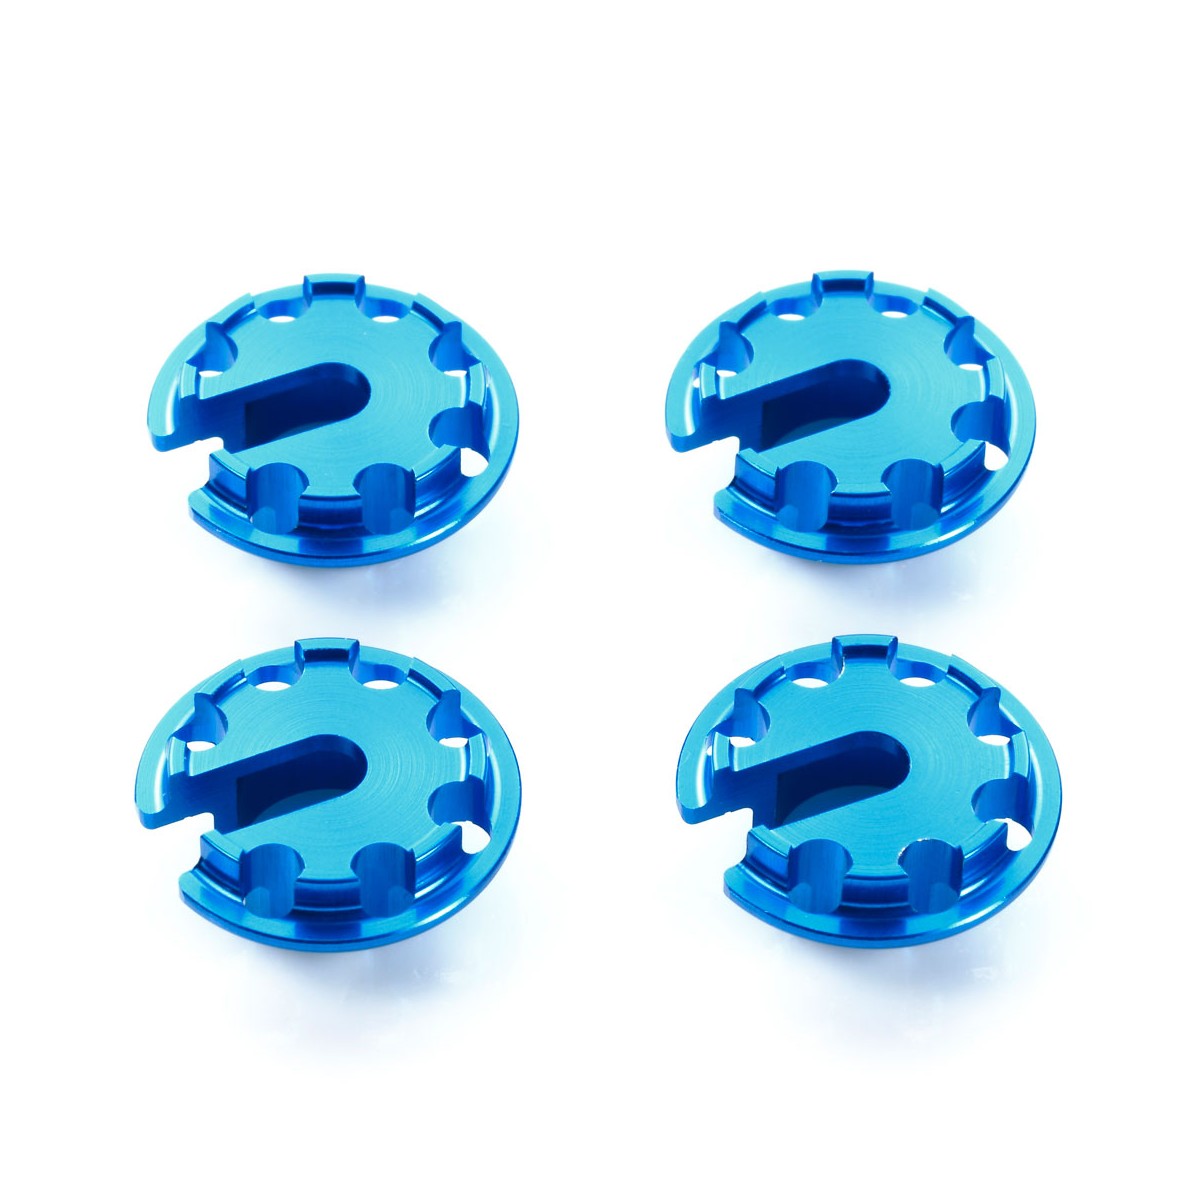 Tamiya 54776 Alu Federteller +1mm (4) blau für TRF-Dämpfer